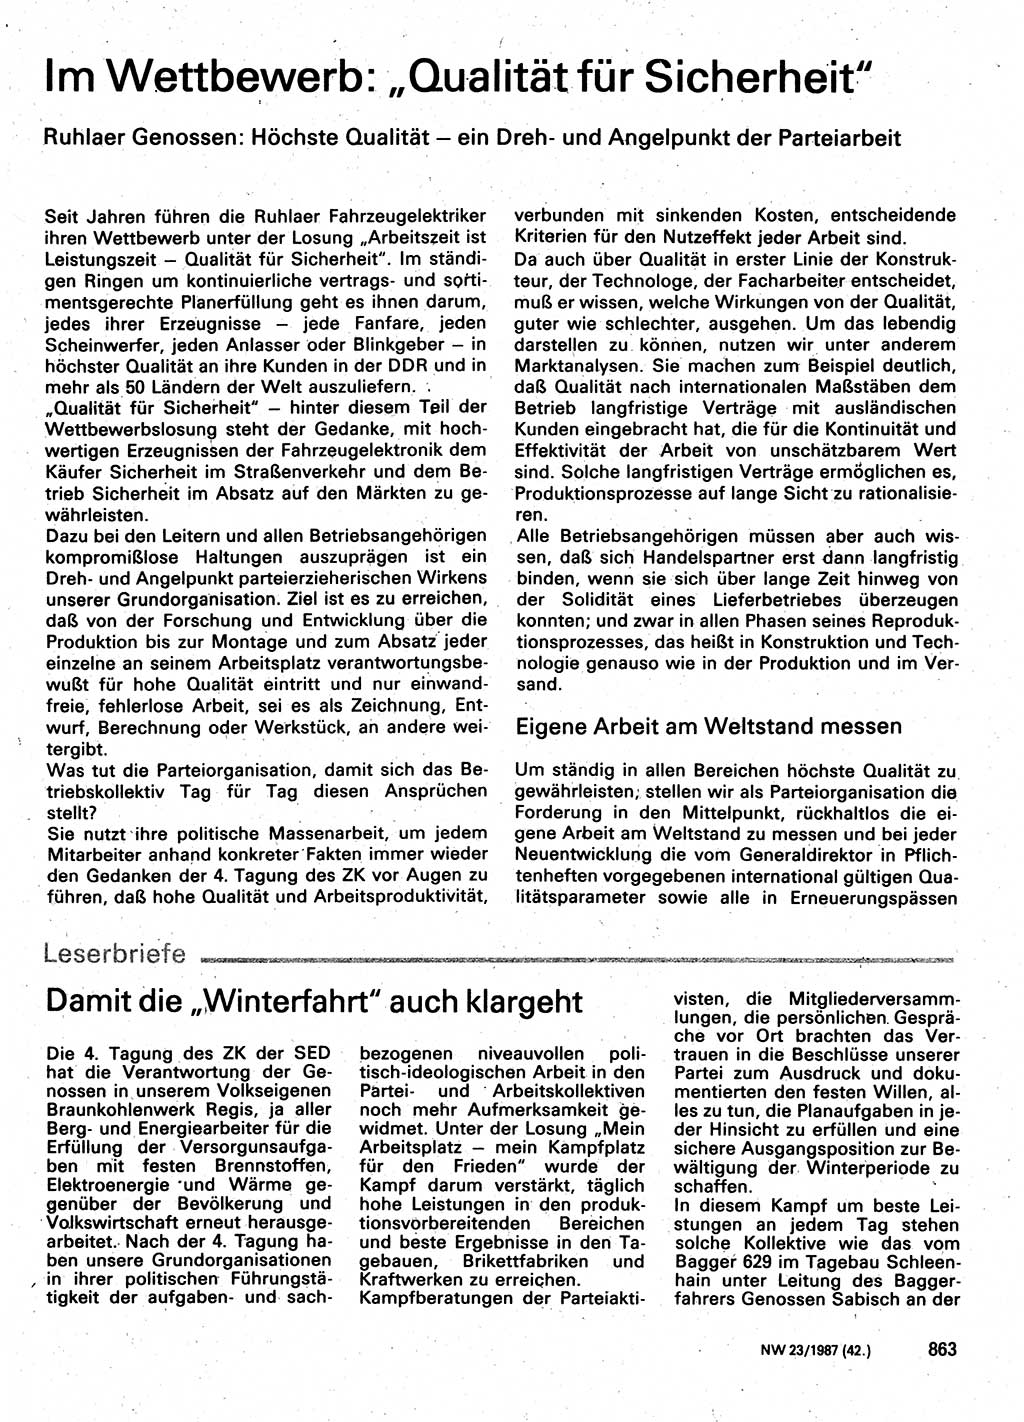 Neuer Weg (NW), Organ des Zentralkomitees (ZK) der SED (Sozialistische Einheitspartei Deutschlands) für Fragen des Parteilebens, 42. Jahrgang [Deutsche Demokratische Republik (DDR)] 1987, Seite 863 (NW ZK SED DDR 1987, S. 863)